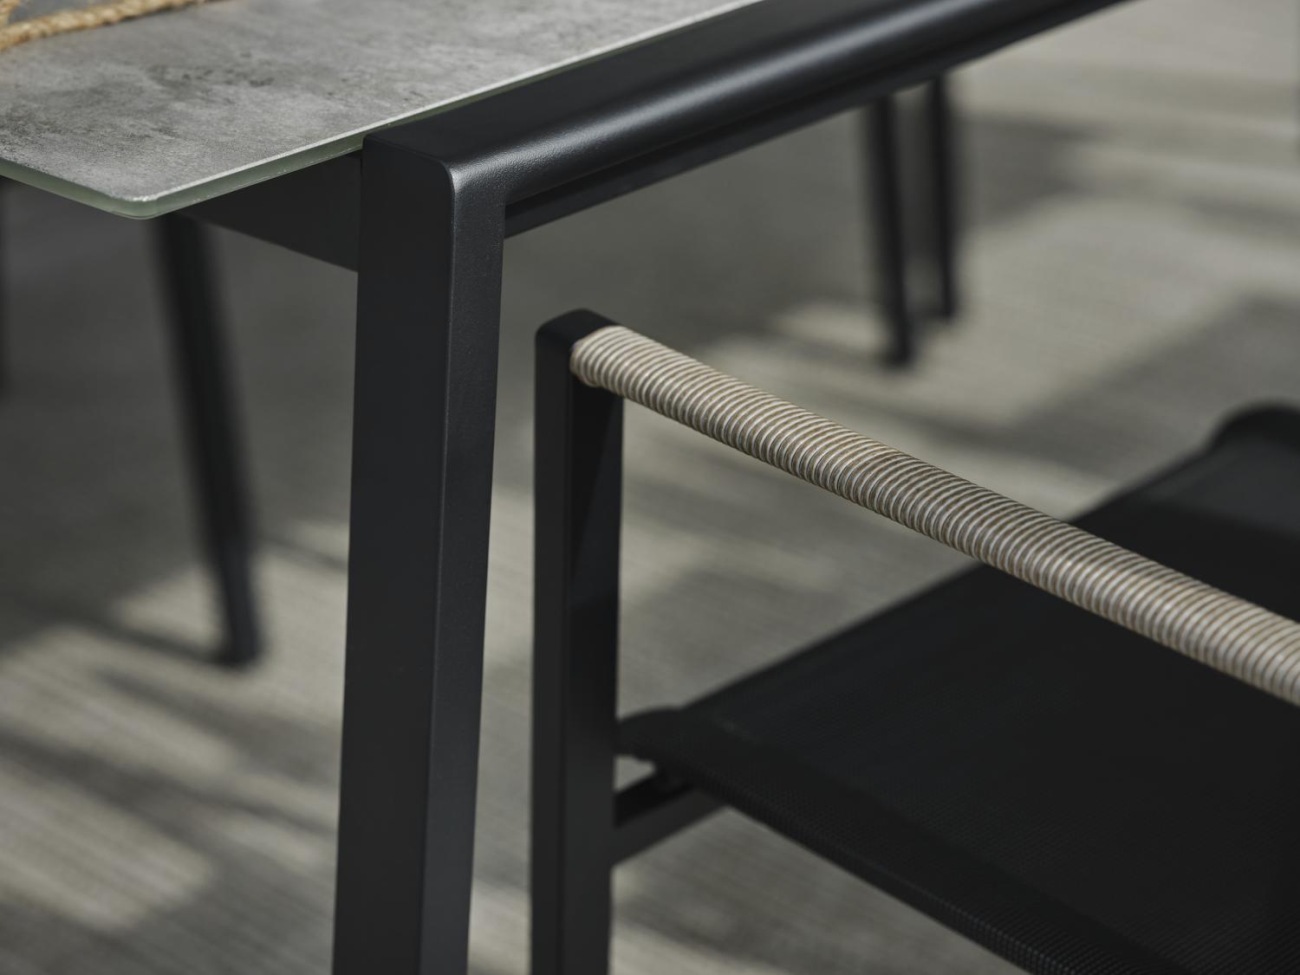 Der Gartenesstisch Lyra überzeugt mit seinem modernen Design. Gefertigt wurde die Tischplatte aus Granit und hat eine hellgraue Farbe. Das Gestell ist auch aus Metall und hat eine schwarze Farbe. Der Tisch besitzt eine Länge von 220 cm.